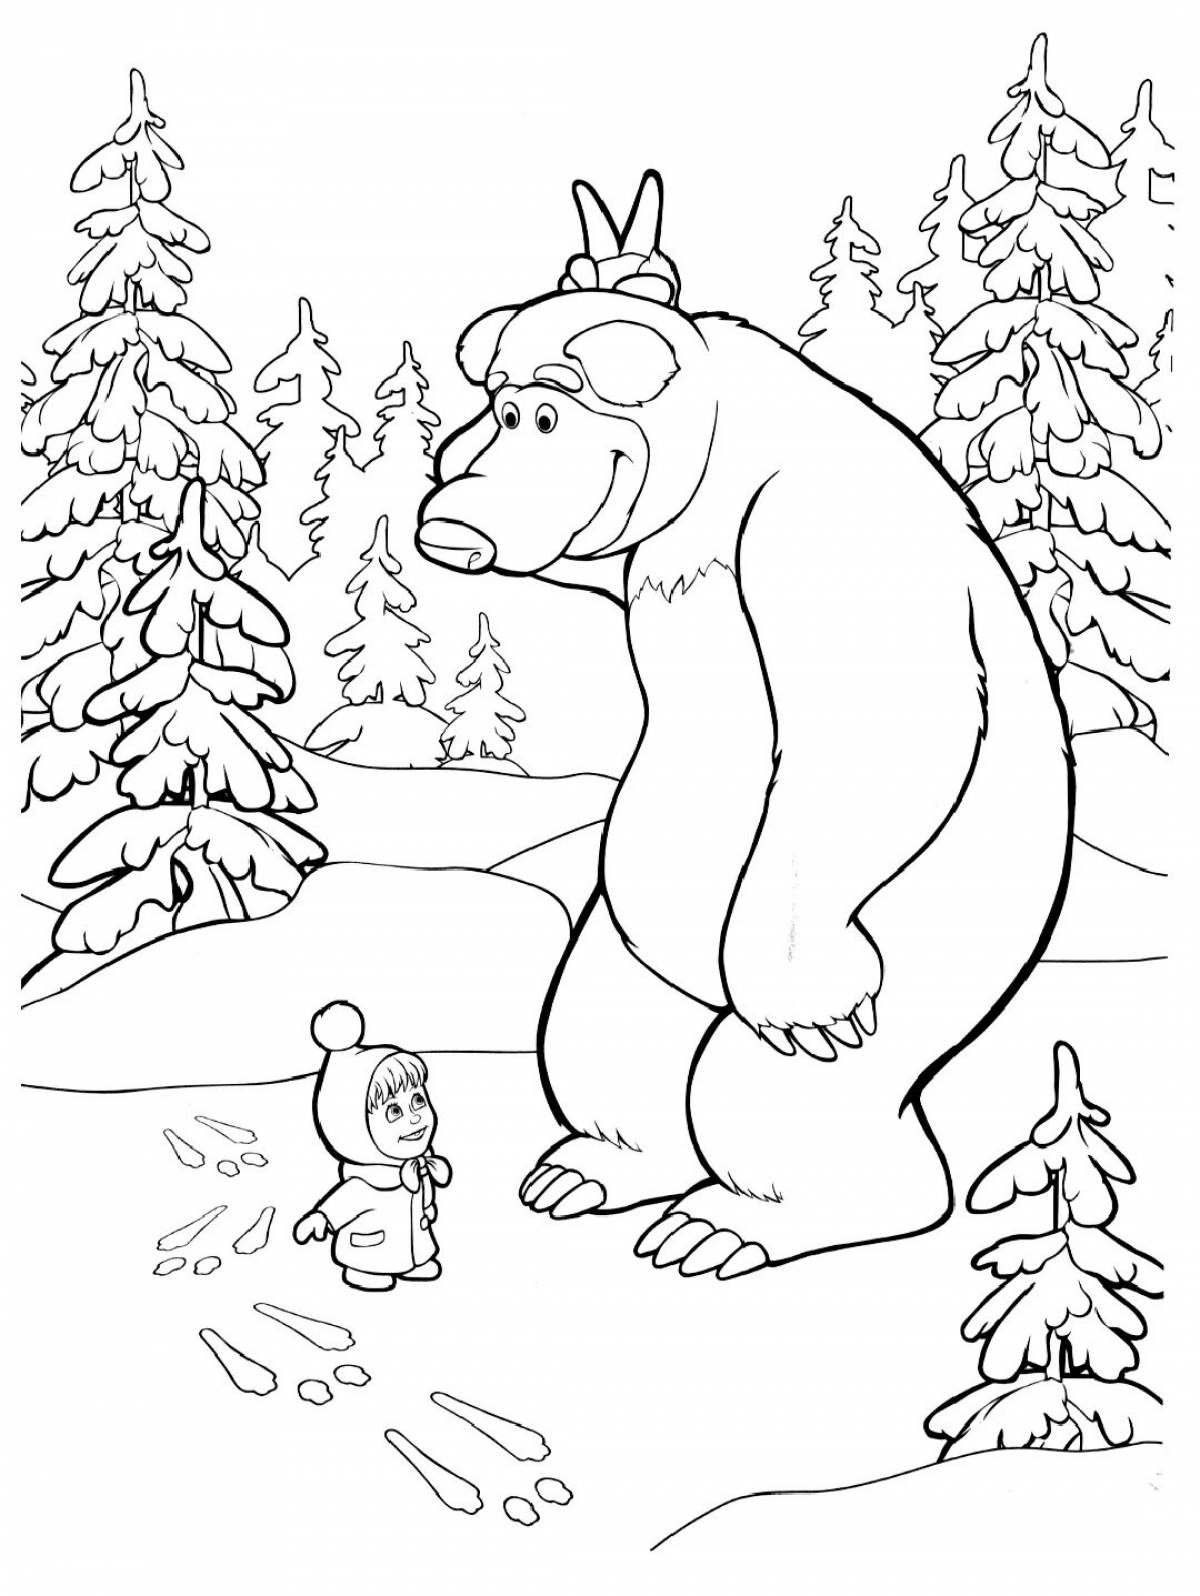 Masha and the bear holiday coloring book